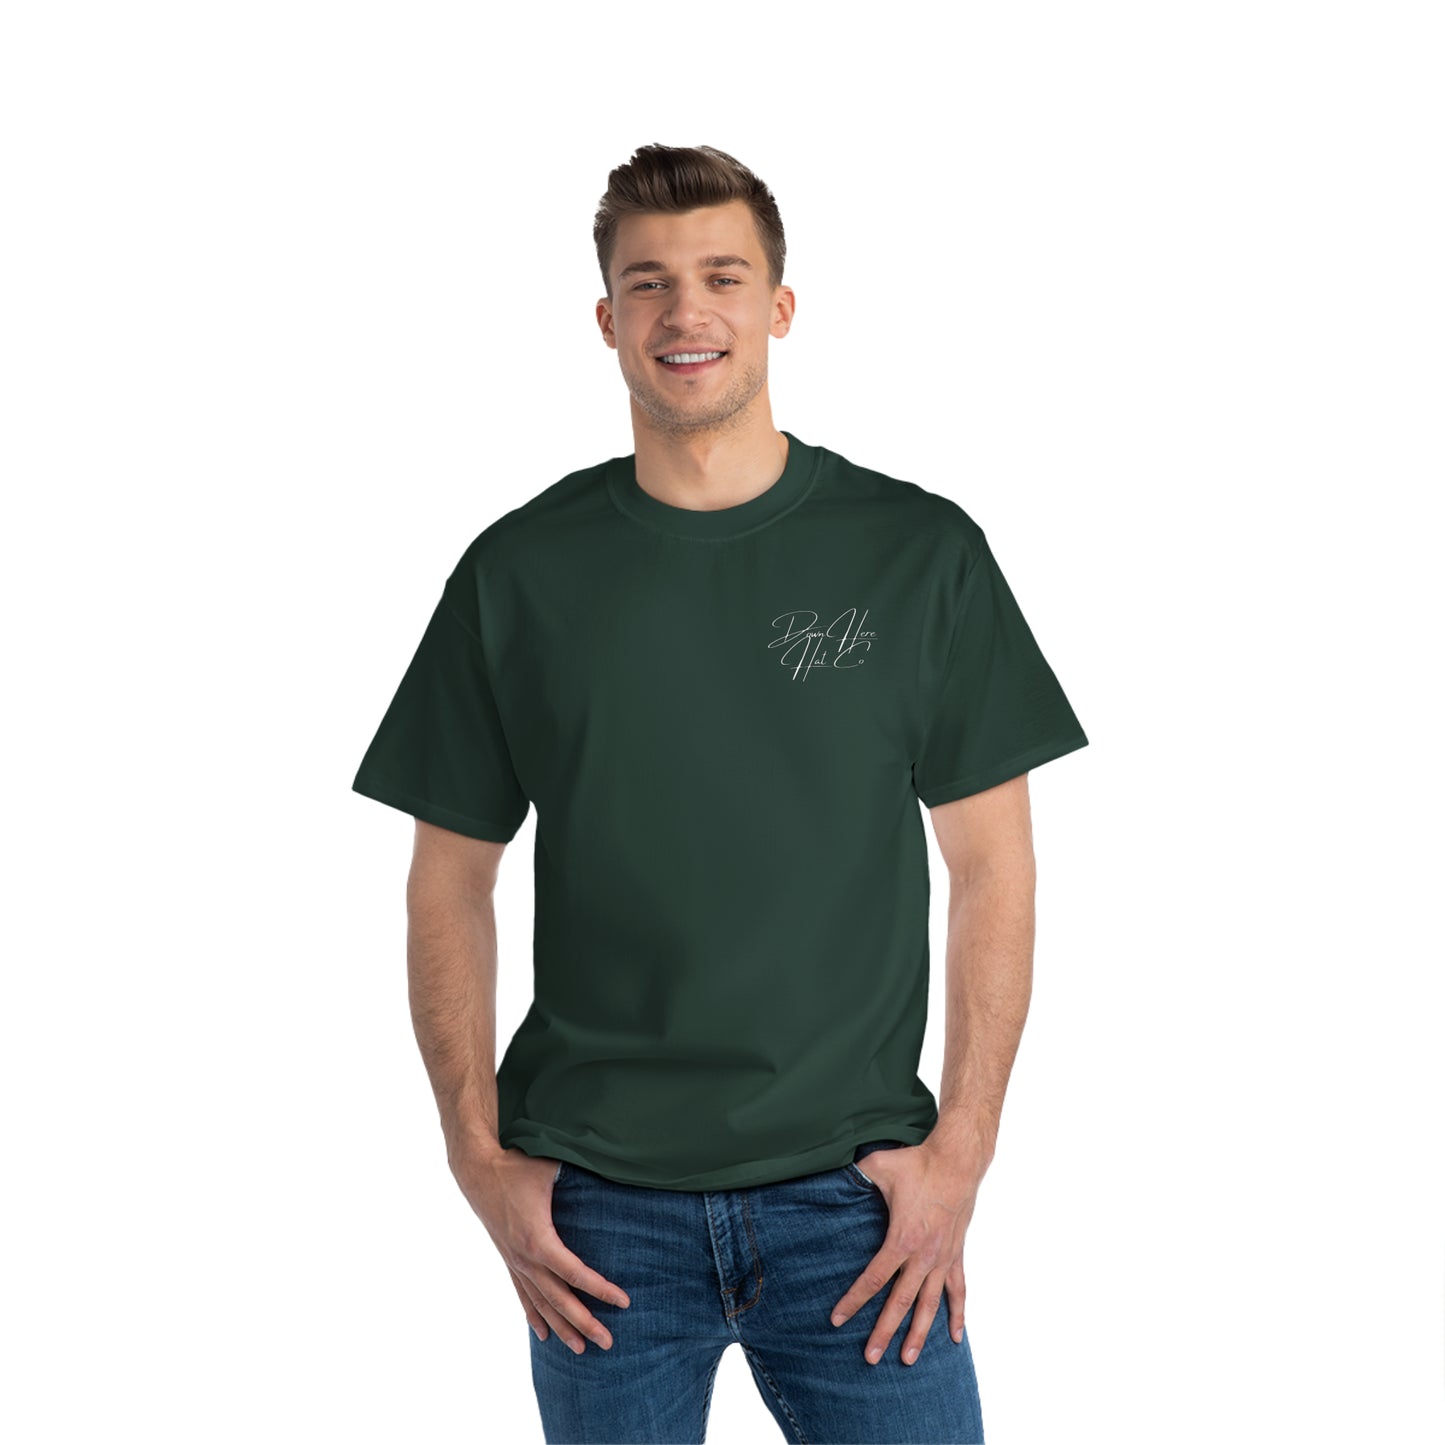 DHHC "Cowboy" T-Shirt